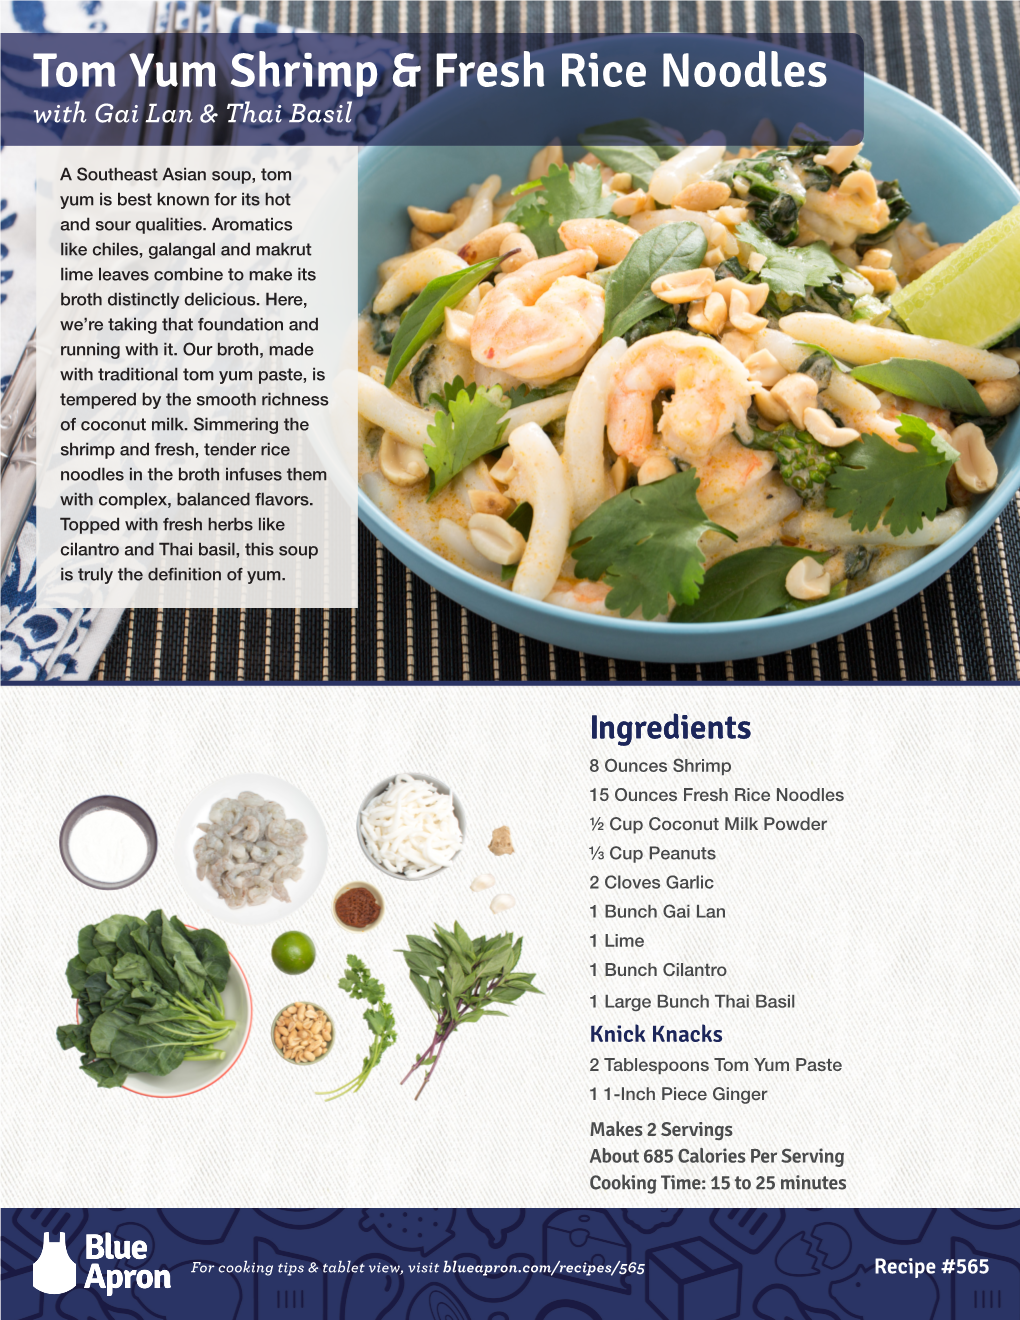 Tom Yum Shrimp & Fresh Rice Noodles